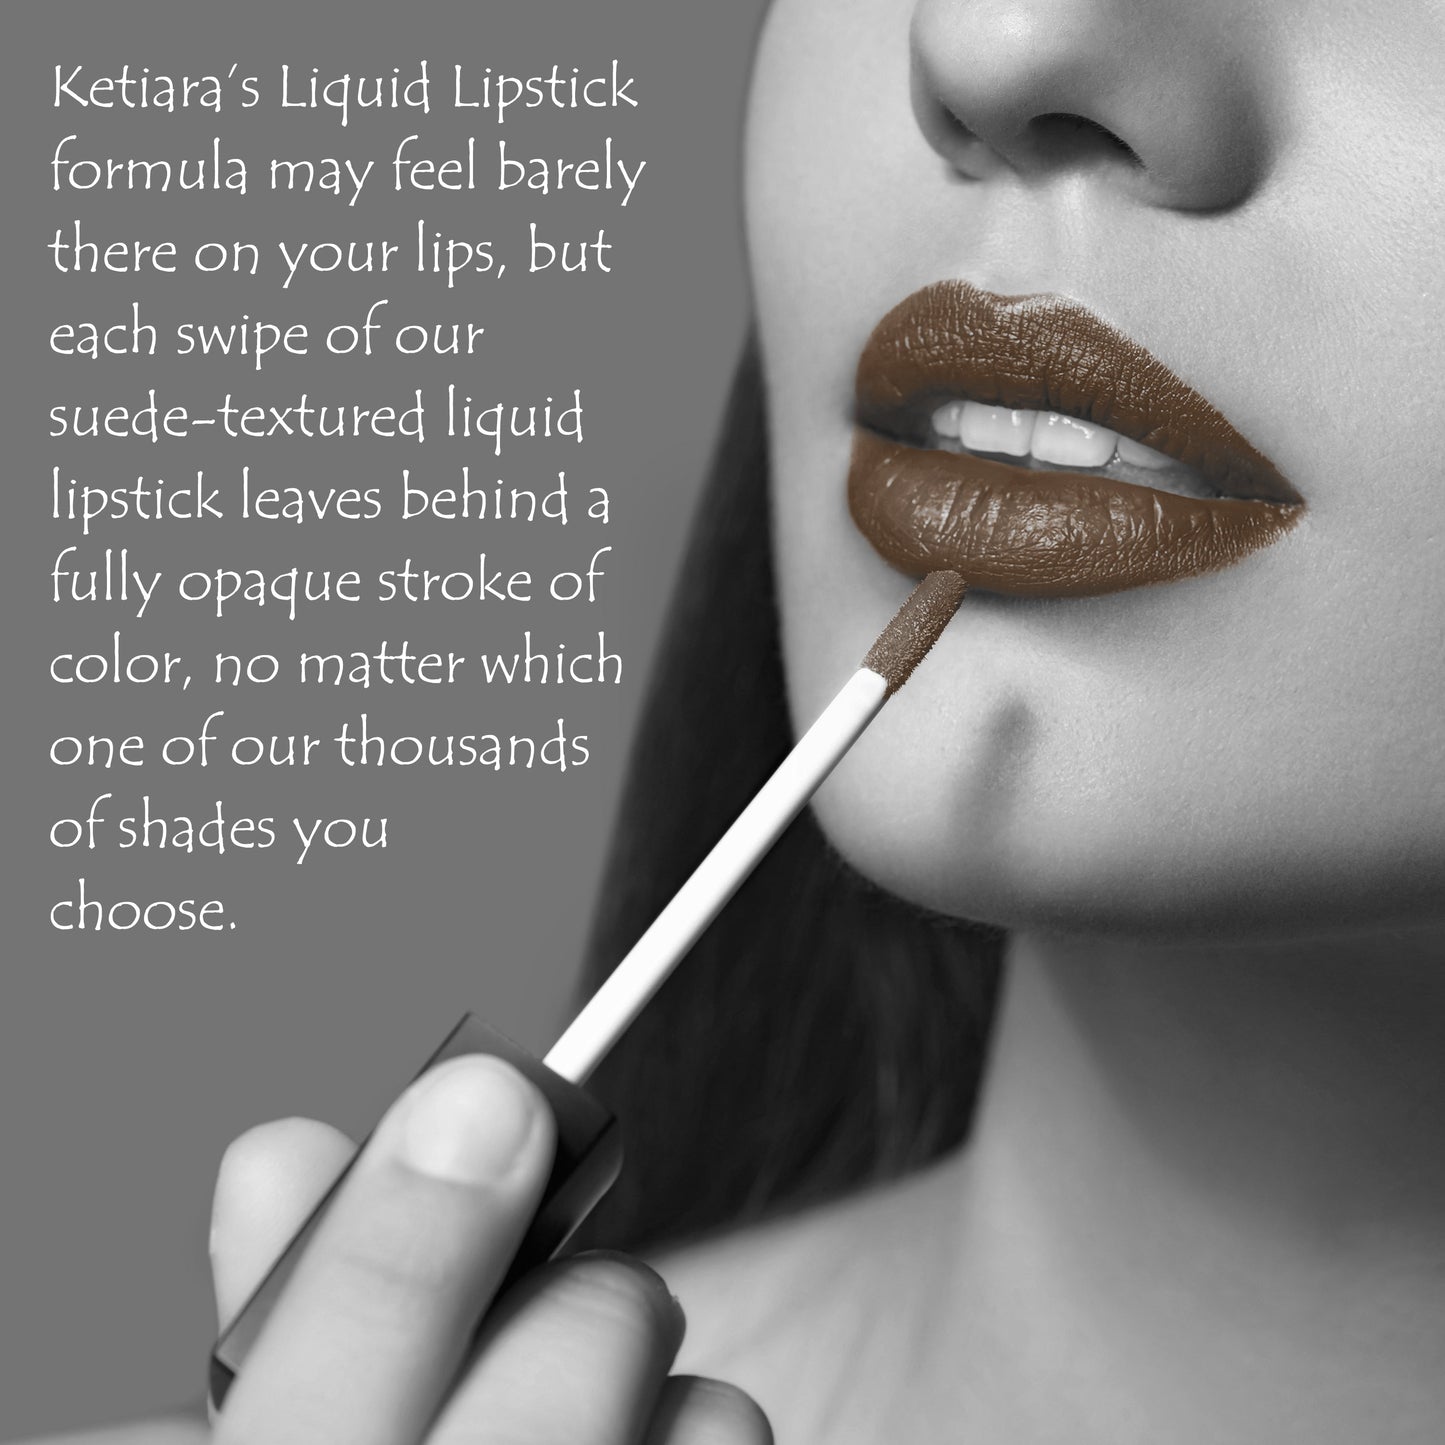 Ketiara Mardi Gras Smudge Proof Matte Liquid Lipstick Infused With Vitamin E, 6 ml